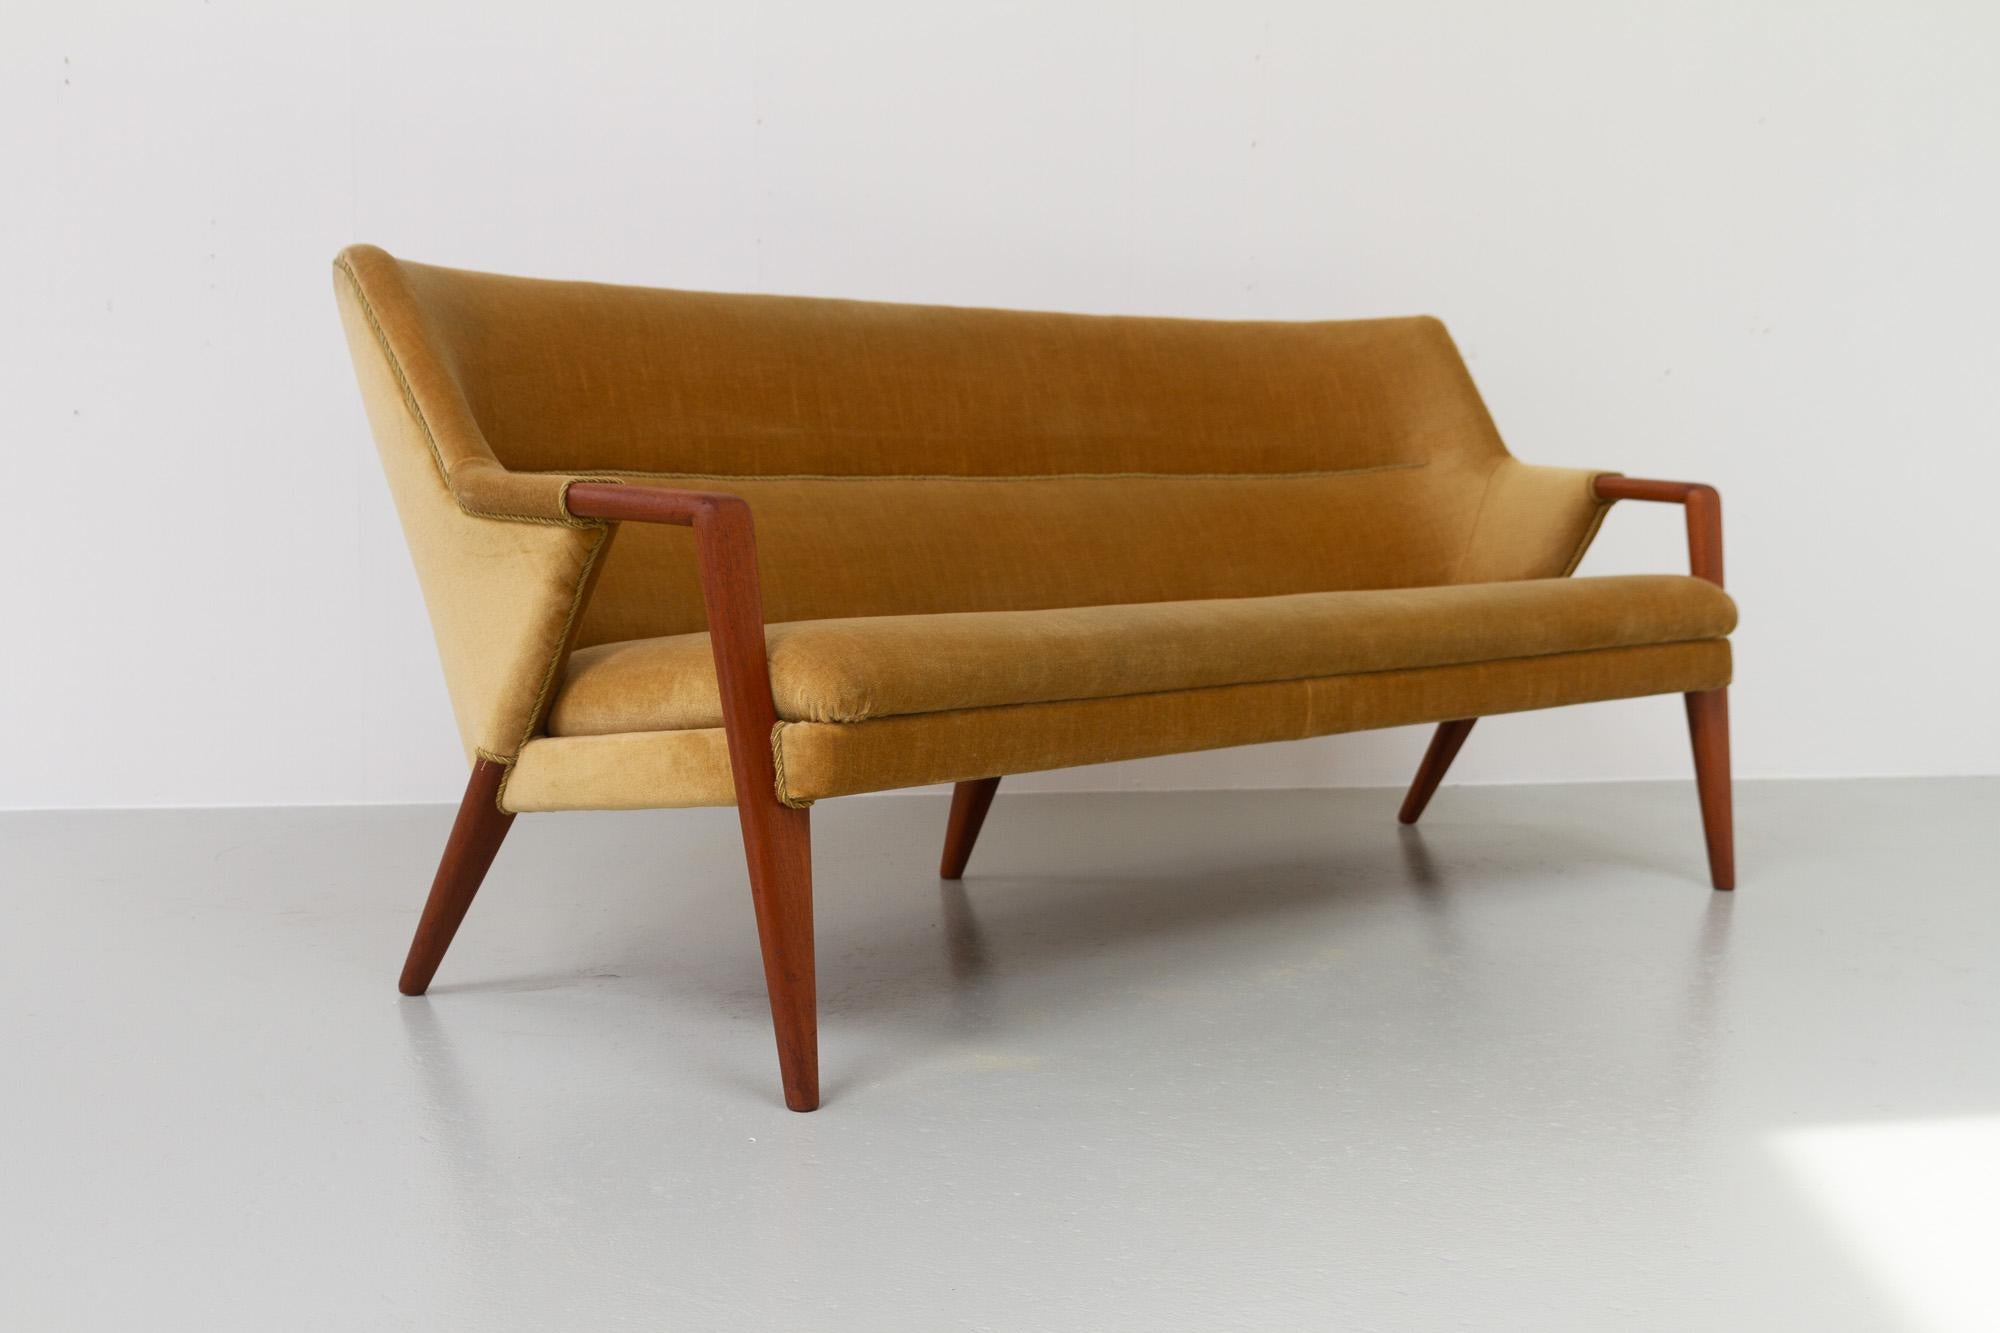 Danish Modern Banana Sofa and Chair by Kurt Olsen for Slagelse Møbelværk, 1950s For Sale 6